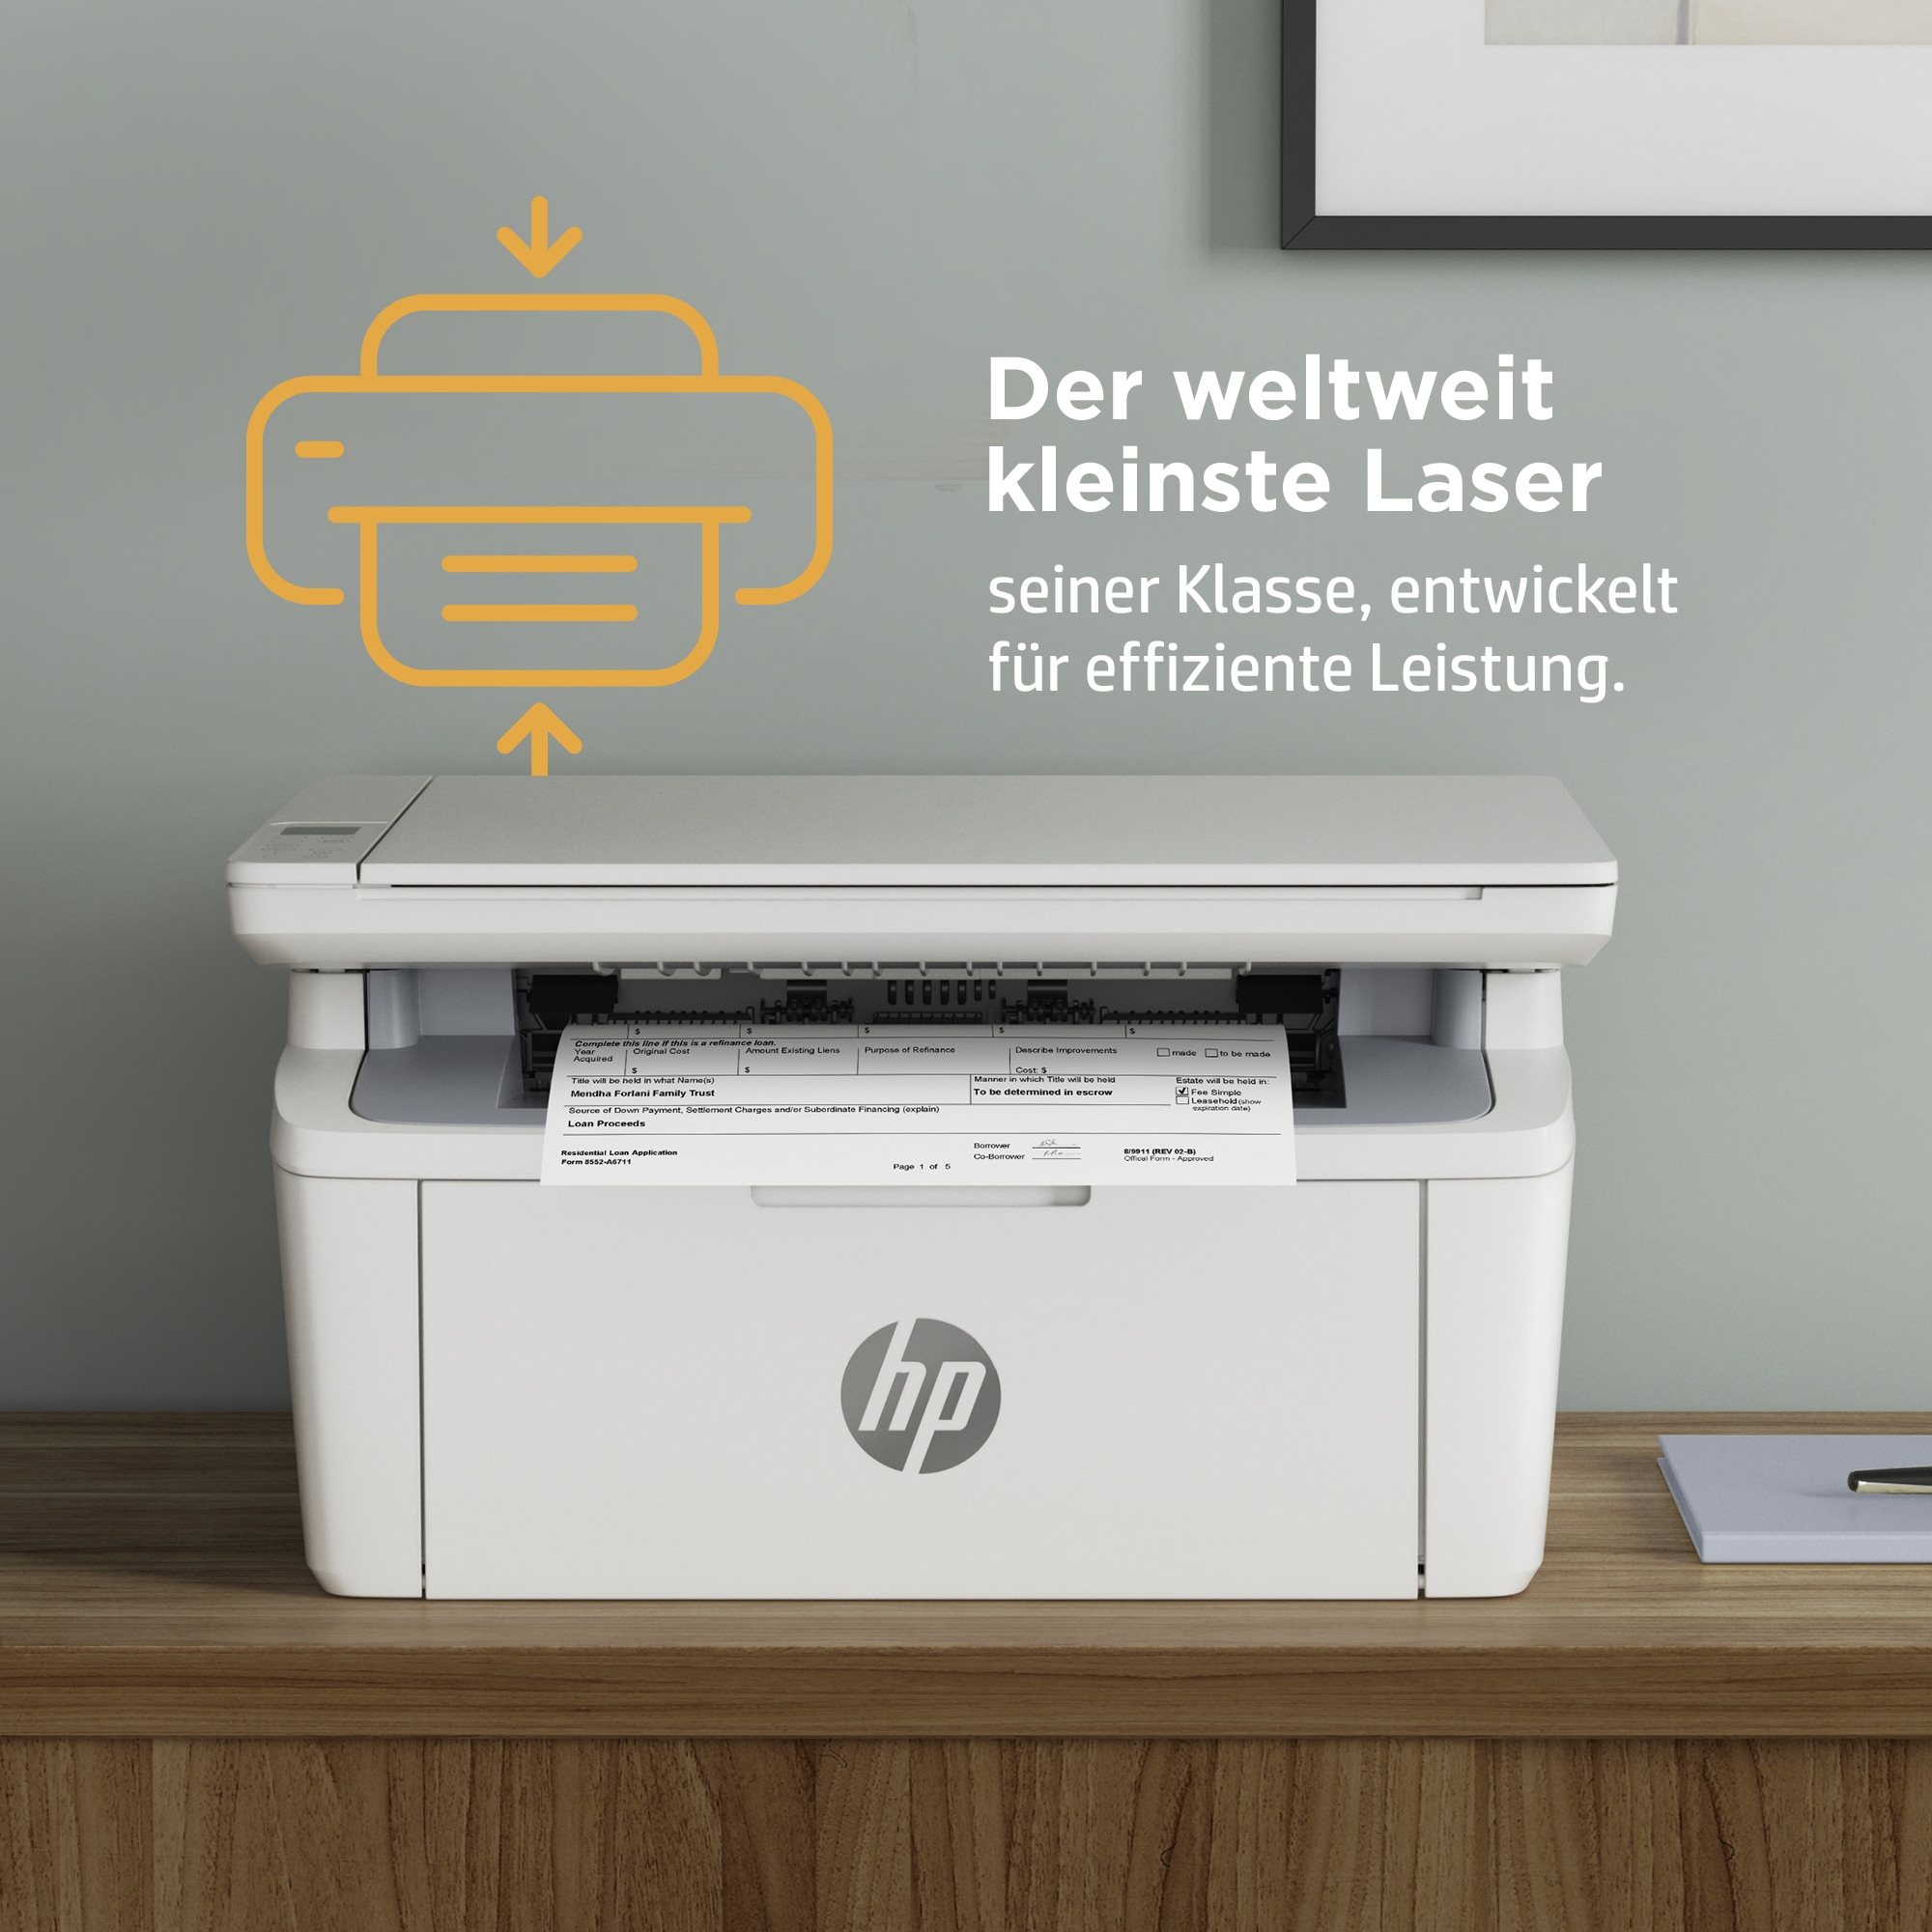 OTTO HP kompatibel Shop Online Ink MFP HP+ im M140w »LaserJet Multifunktionsdrucker Instant Drucker«,